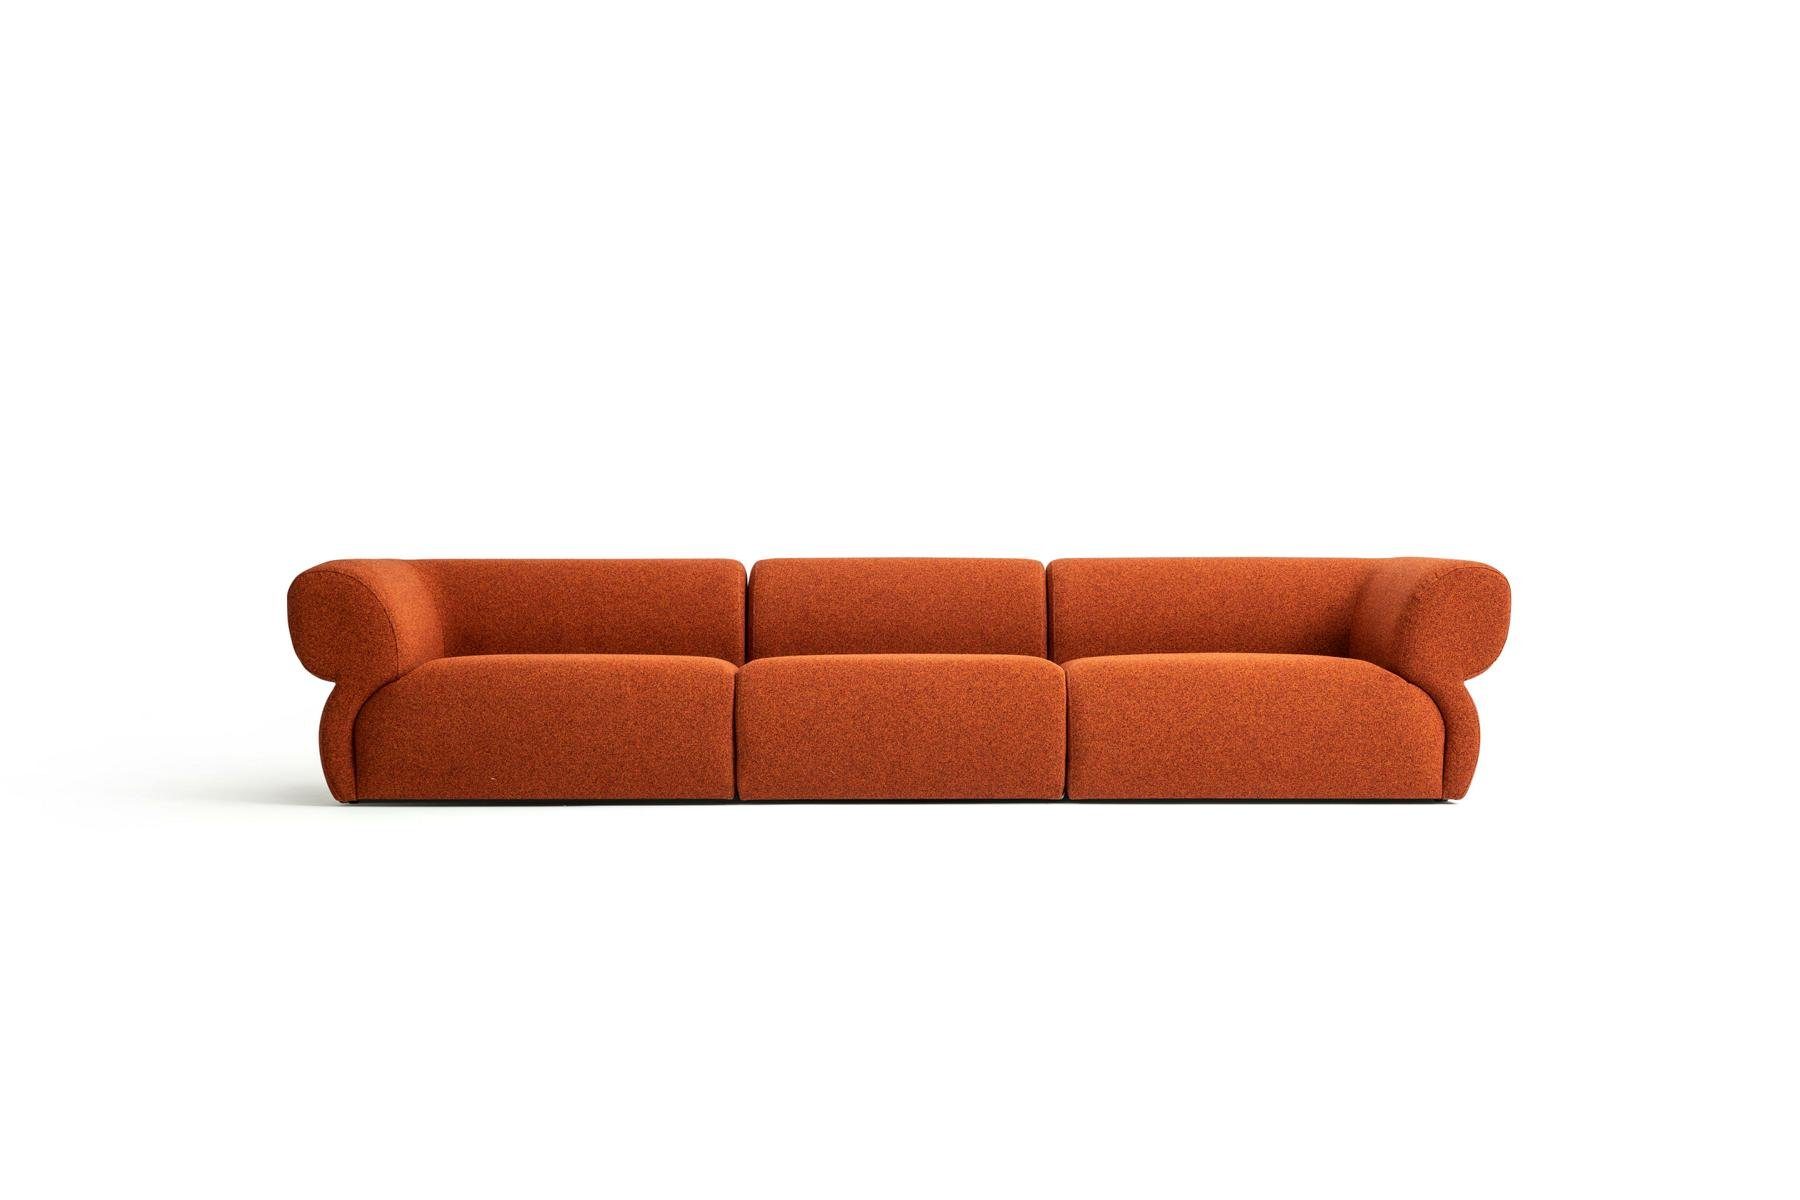 JVmoebel Big-Sofa Design Sofa 5 Sitzer Wohnzimmer Polstersofa Modern Stil, Made in Europe Orange